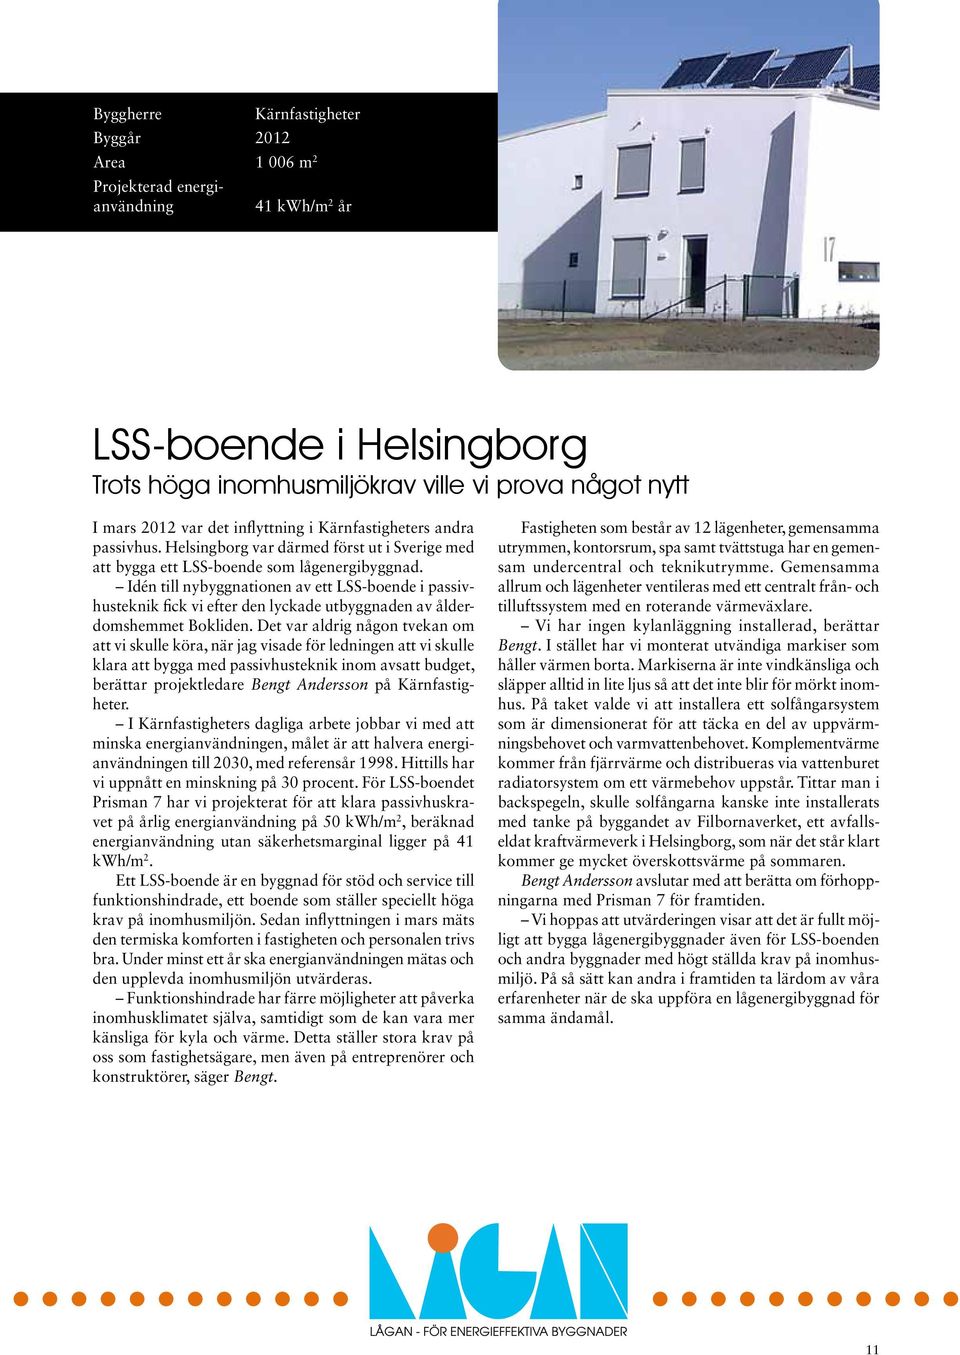 Idén till nybyggnationen av ett LSS-boende i passivhusteknik fick vi efter den lyckade utbyggnaden av ålderdomshemmet Bokliden.